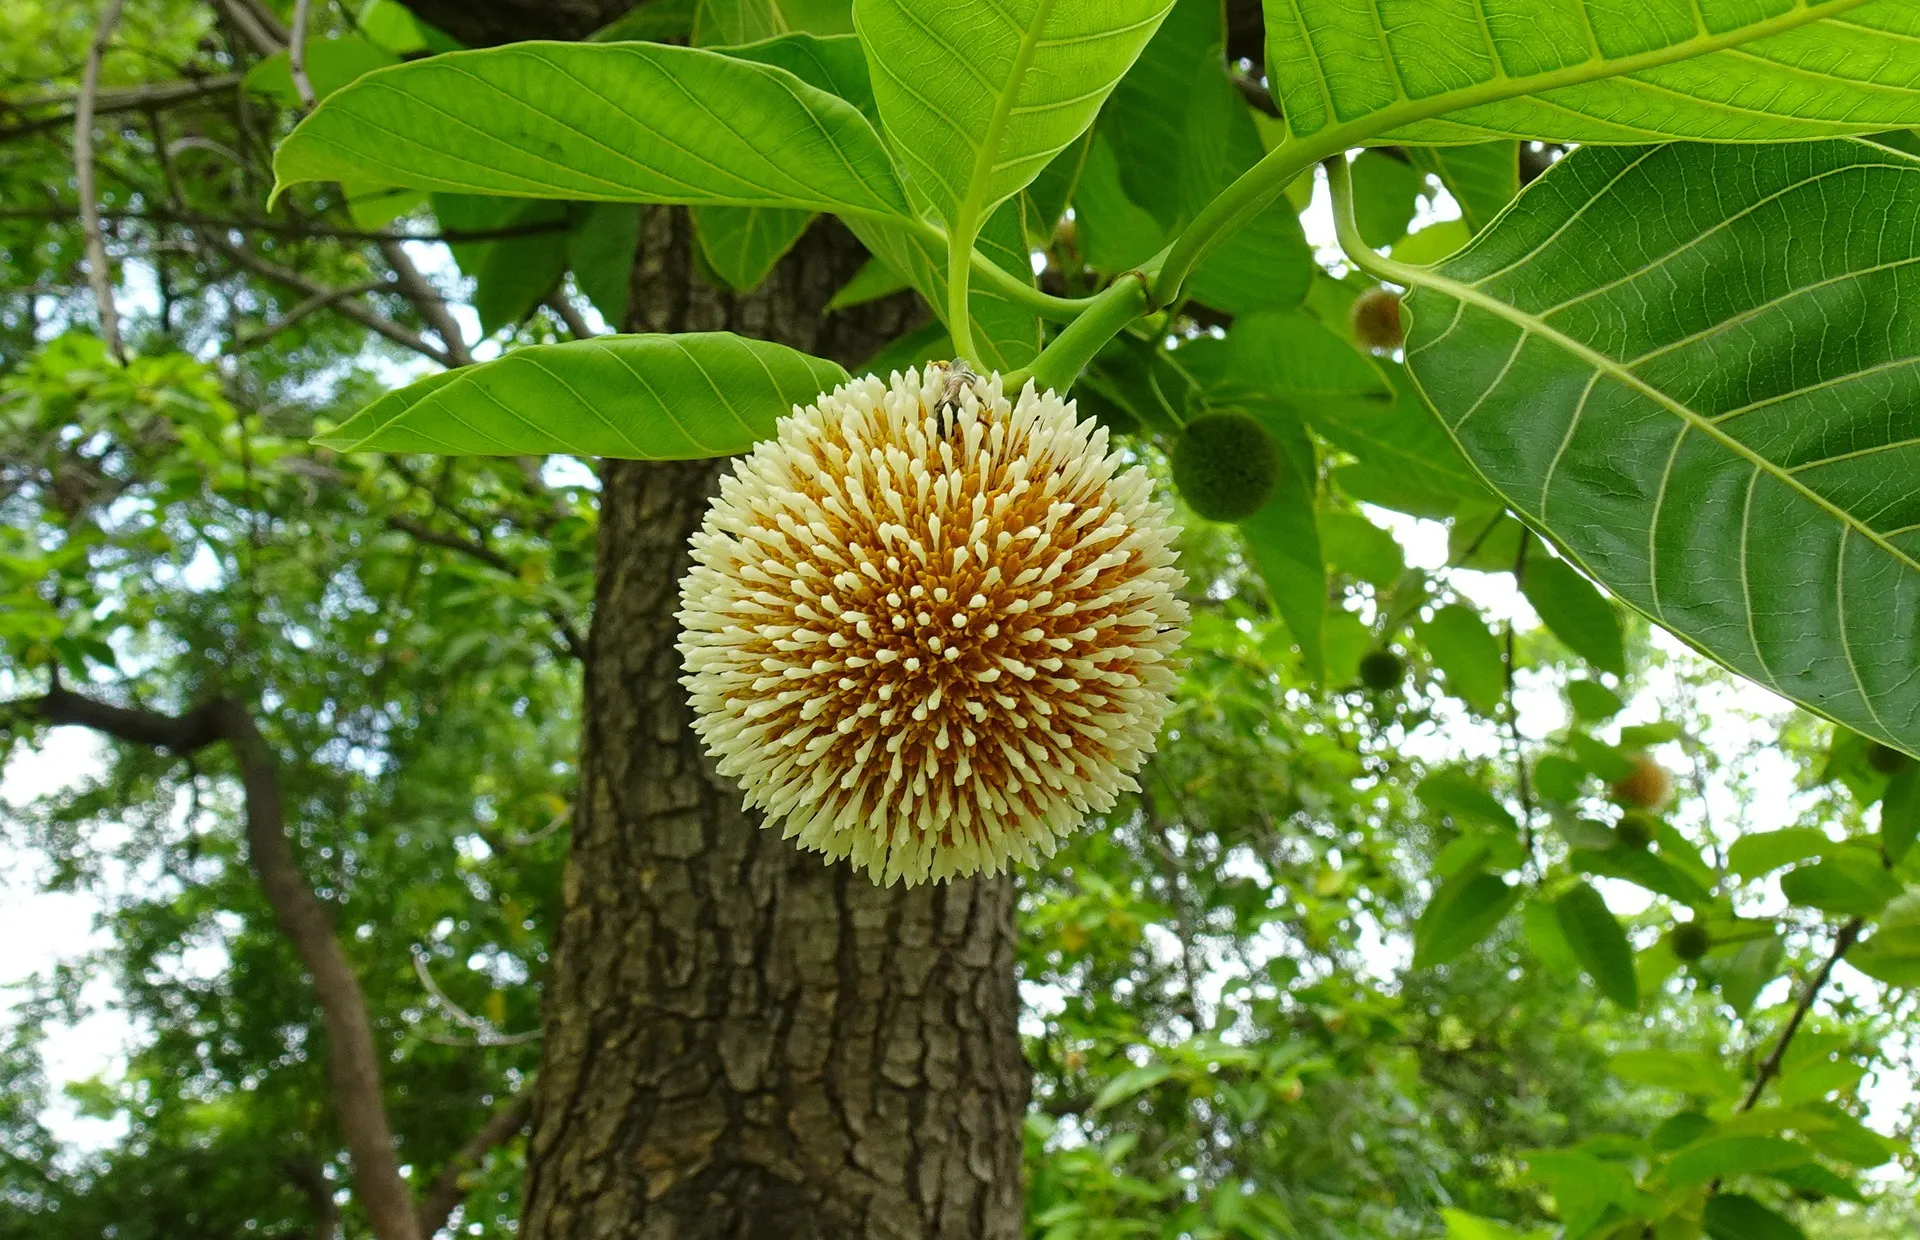 cadamba flower on tree